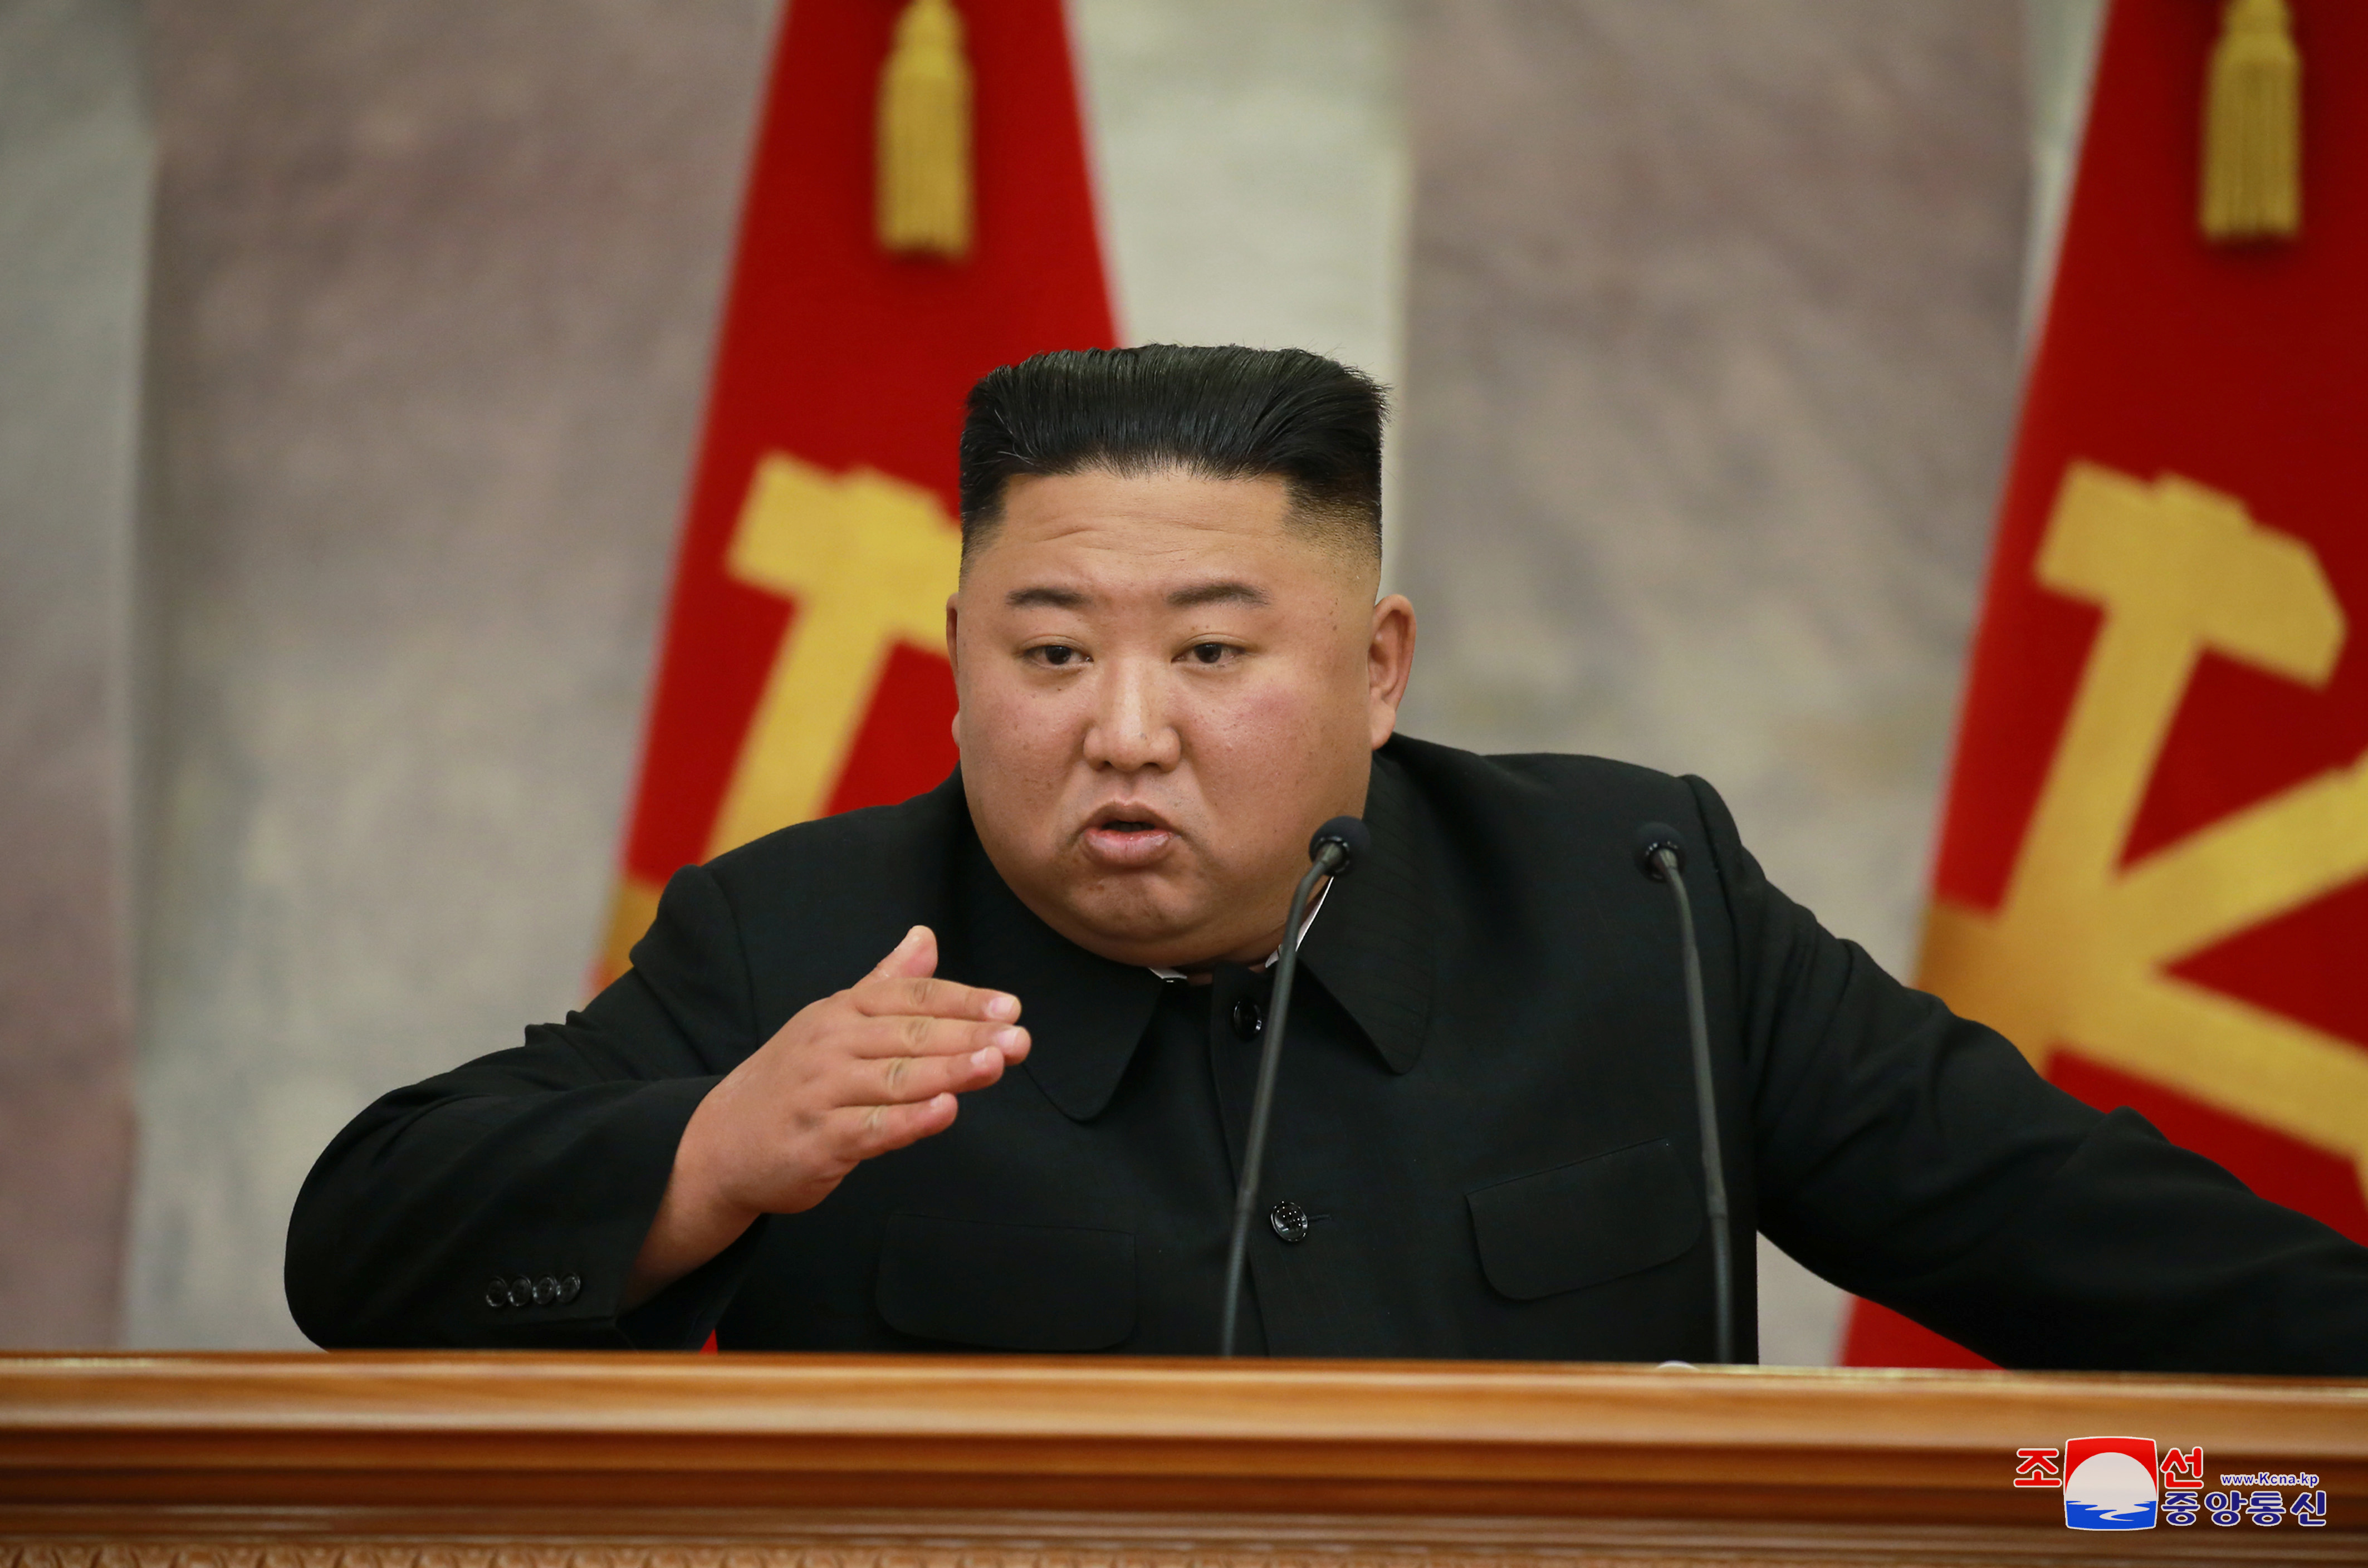 El dictador norcoreano es conocido por su crueldad. La ONU denunció en su ultimo informe la violación sistemática de su régimen a los derechos humanos